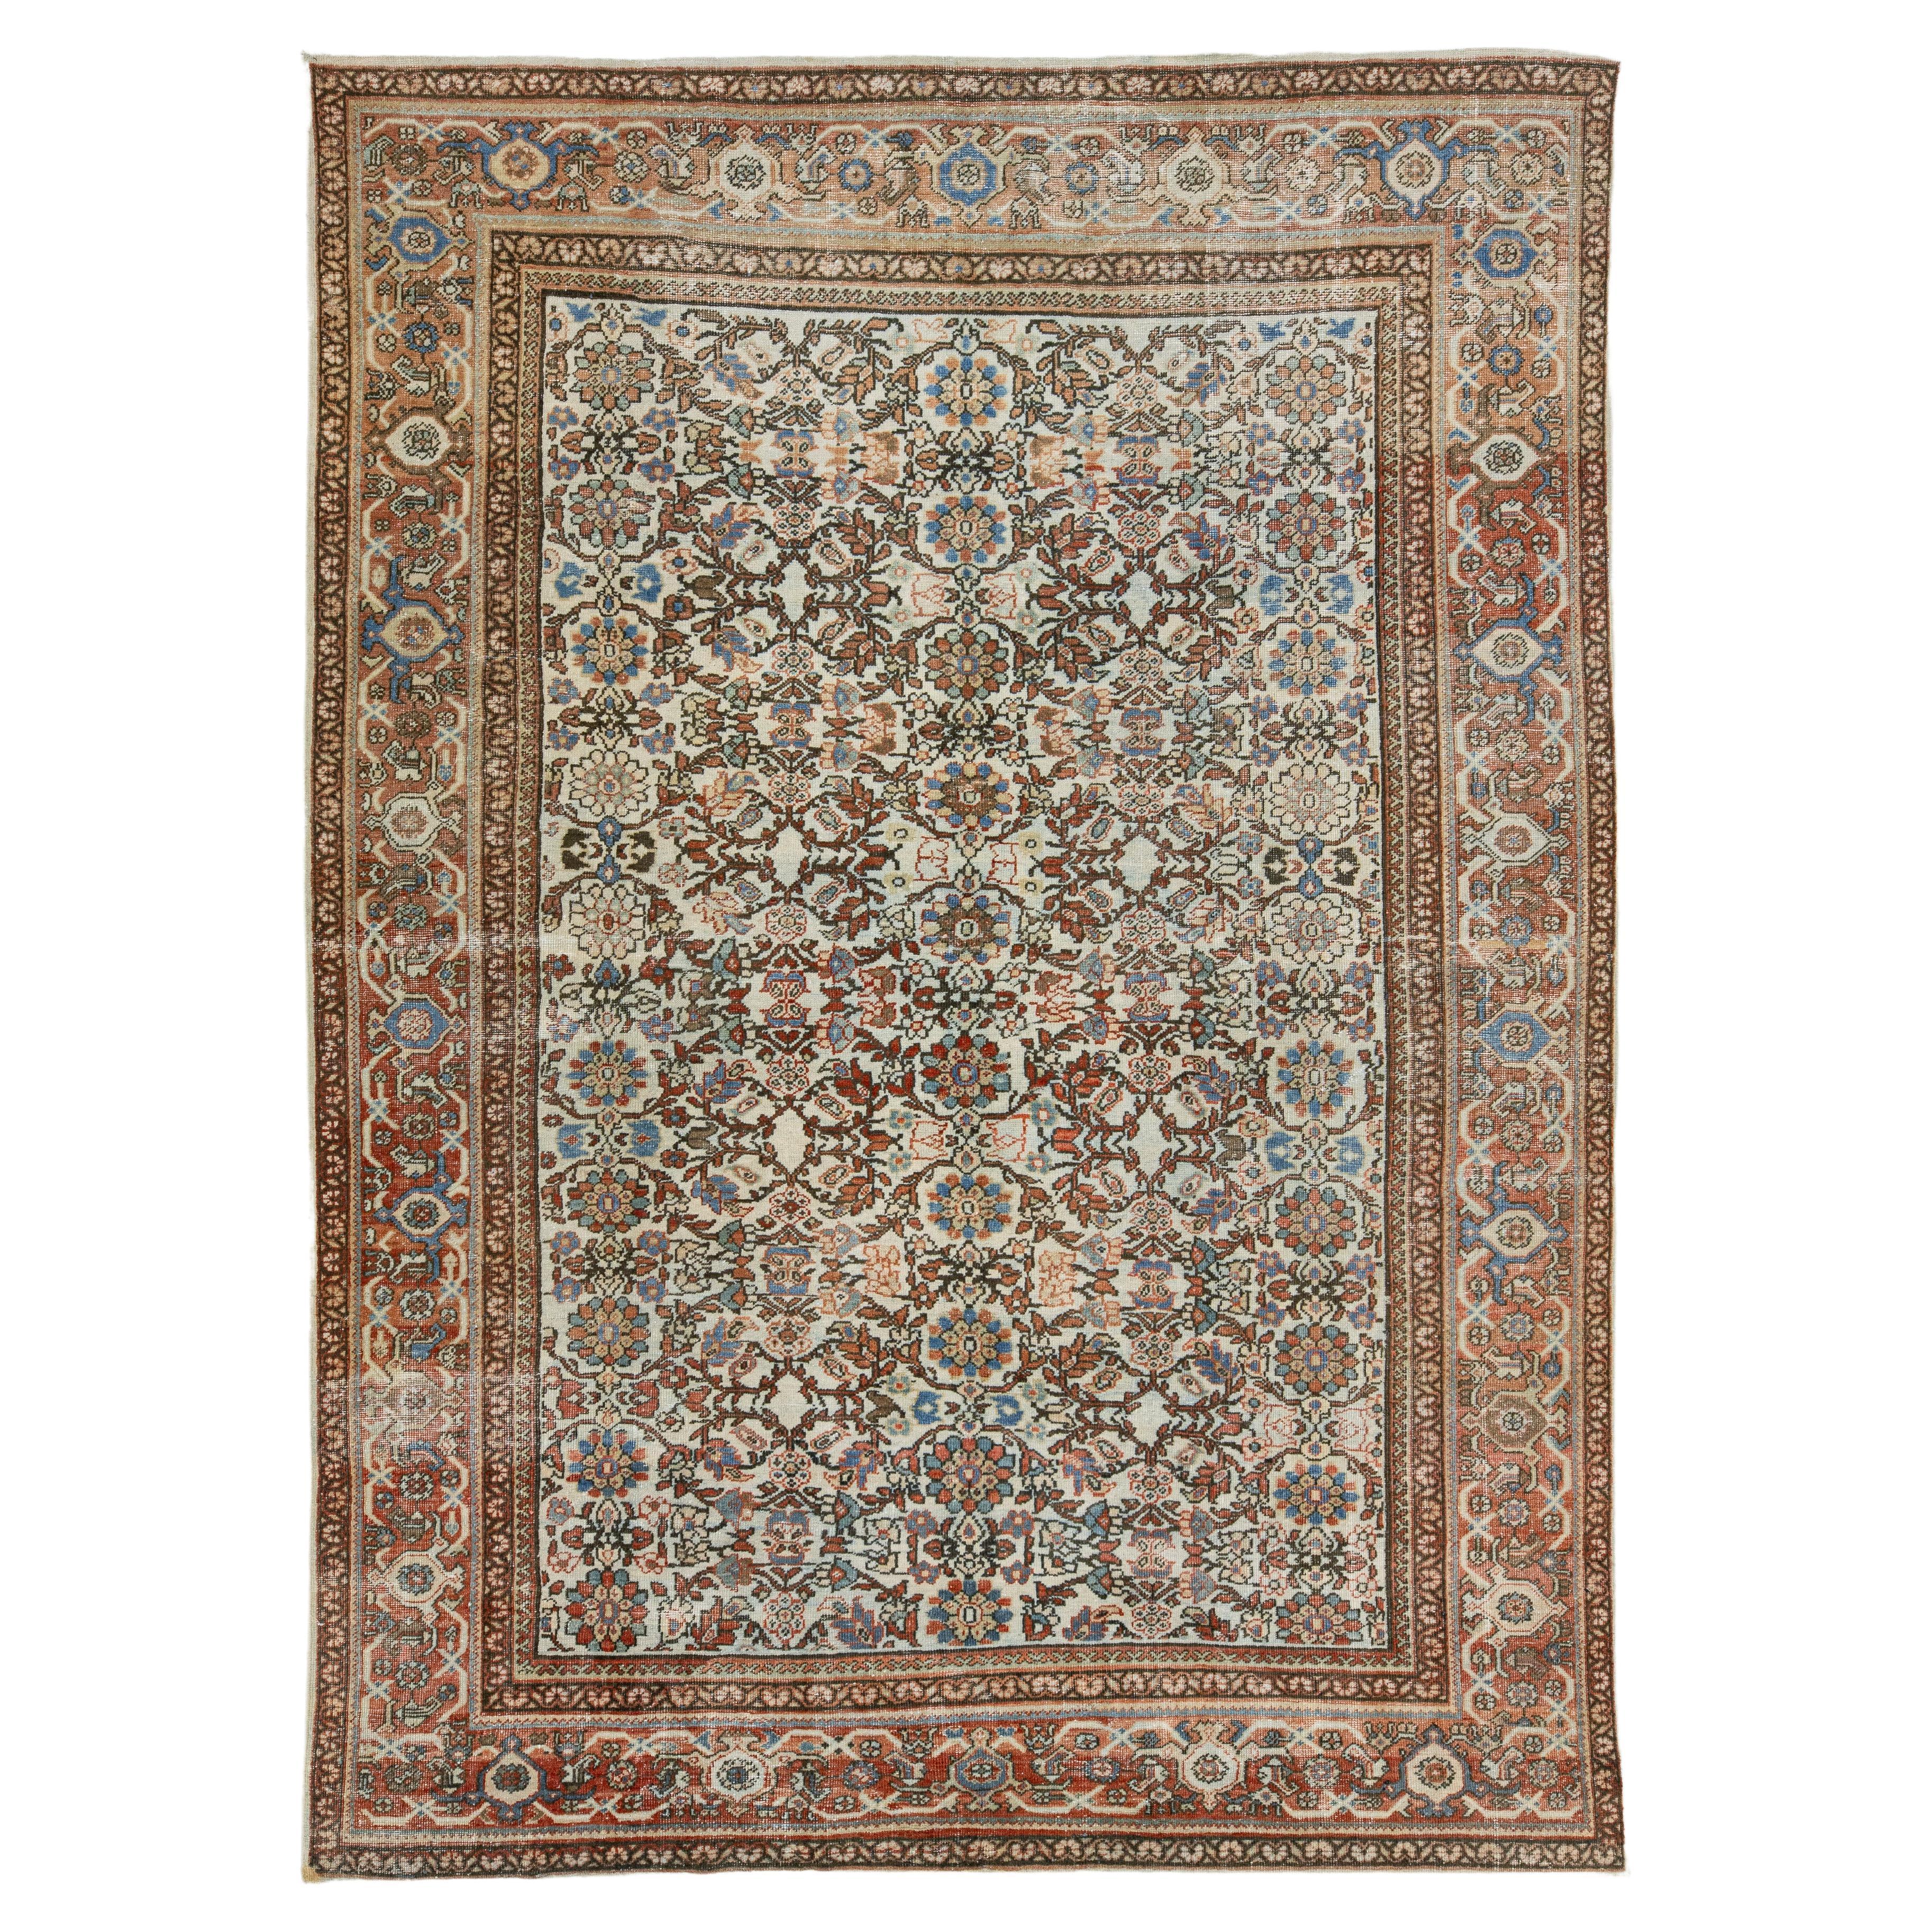 Handgefertigte Multicolor Persisch Mahal entworfen Wolle Teppich aus den 1910er Jahren